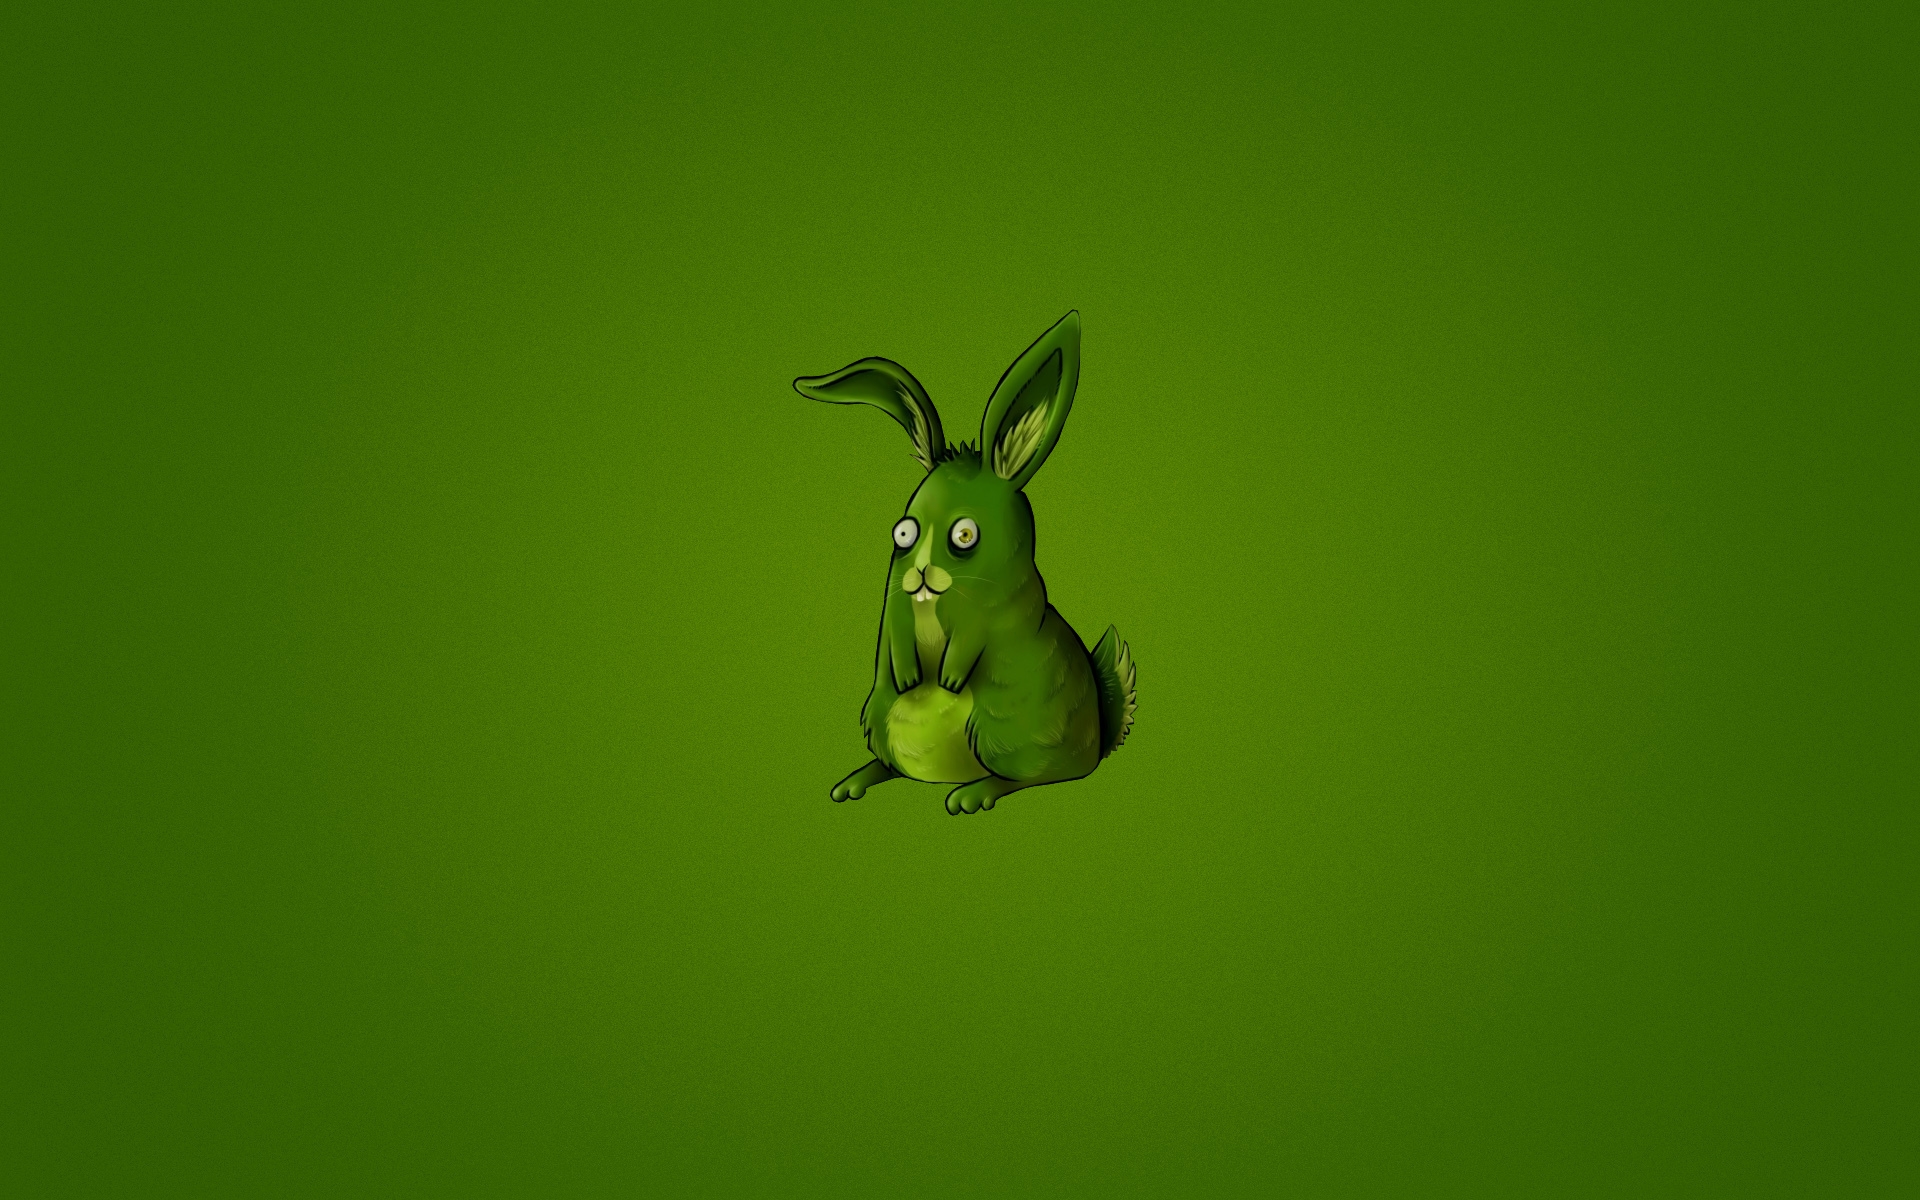 Cute Little Rabbit for 1920 x 1200 widescreen resolution